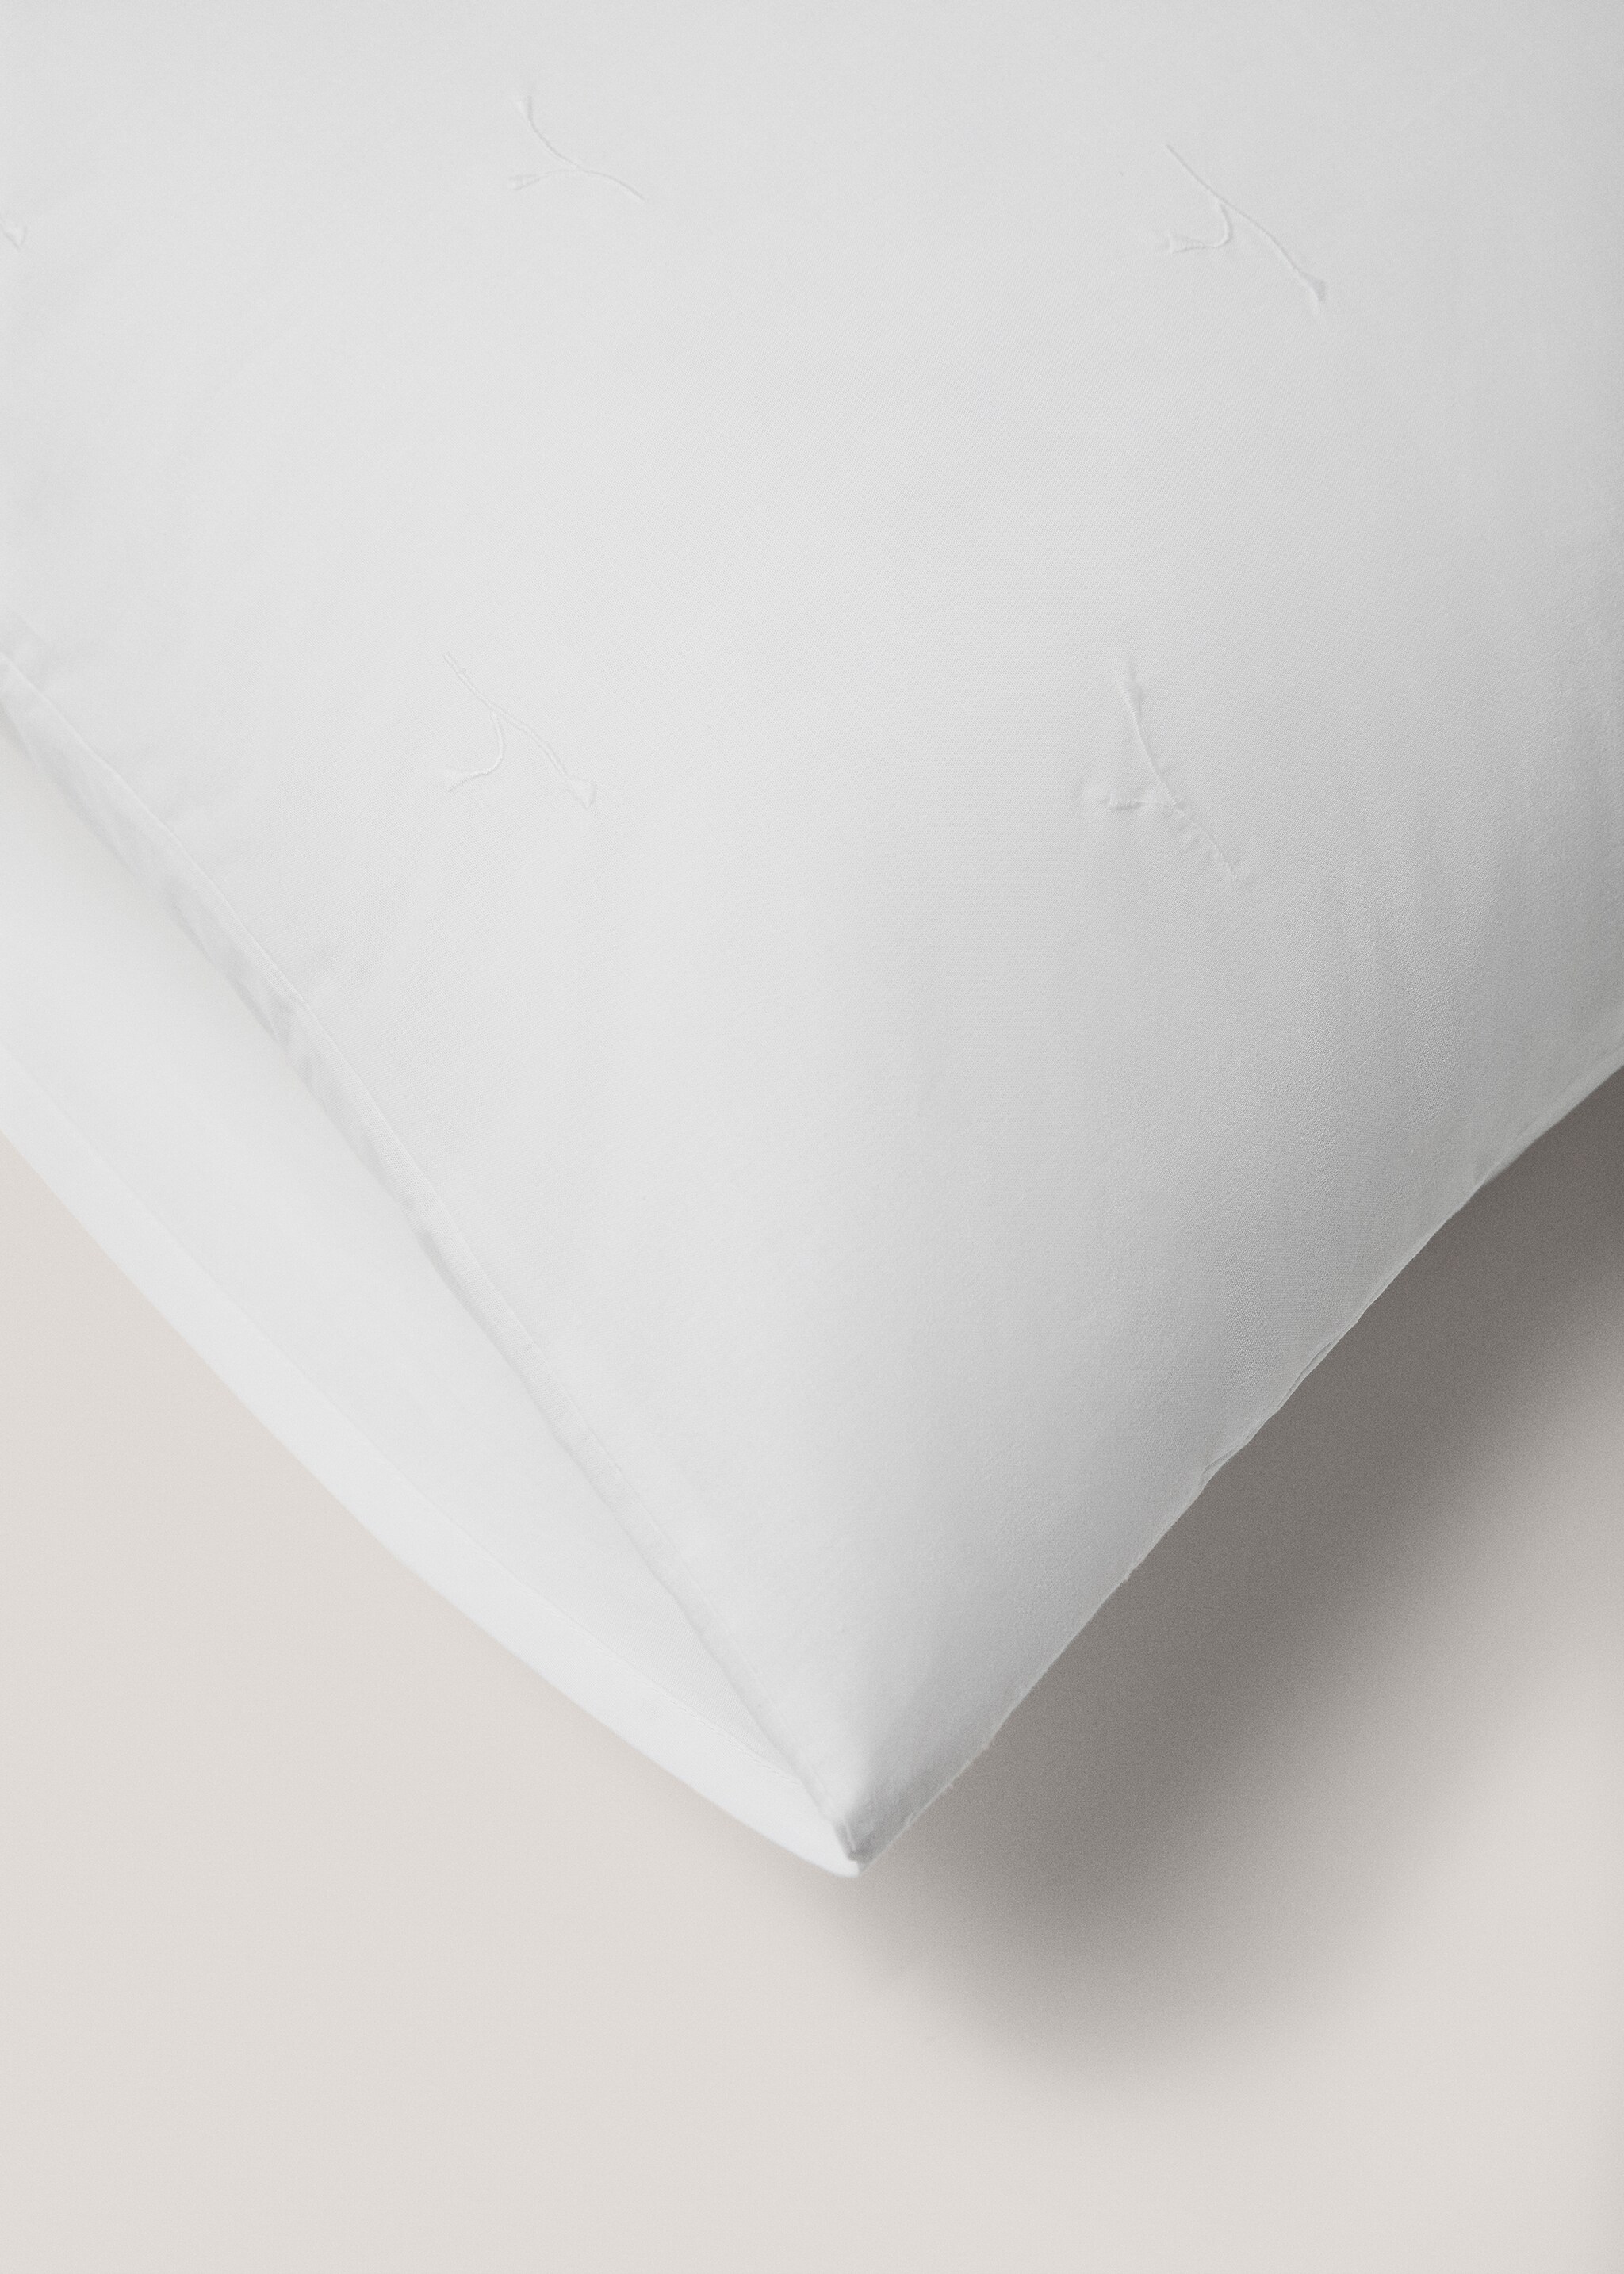 Funda de almohada algodón bordado floral 60x60cm - Detalle del artículo 4